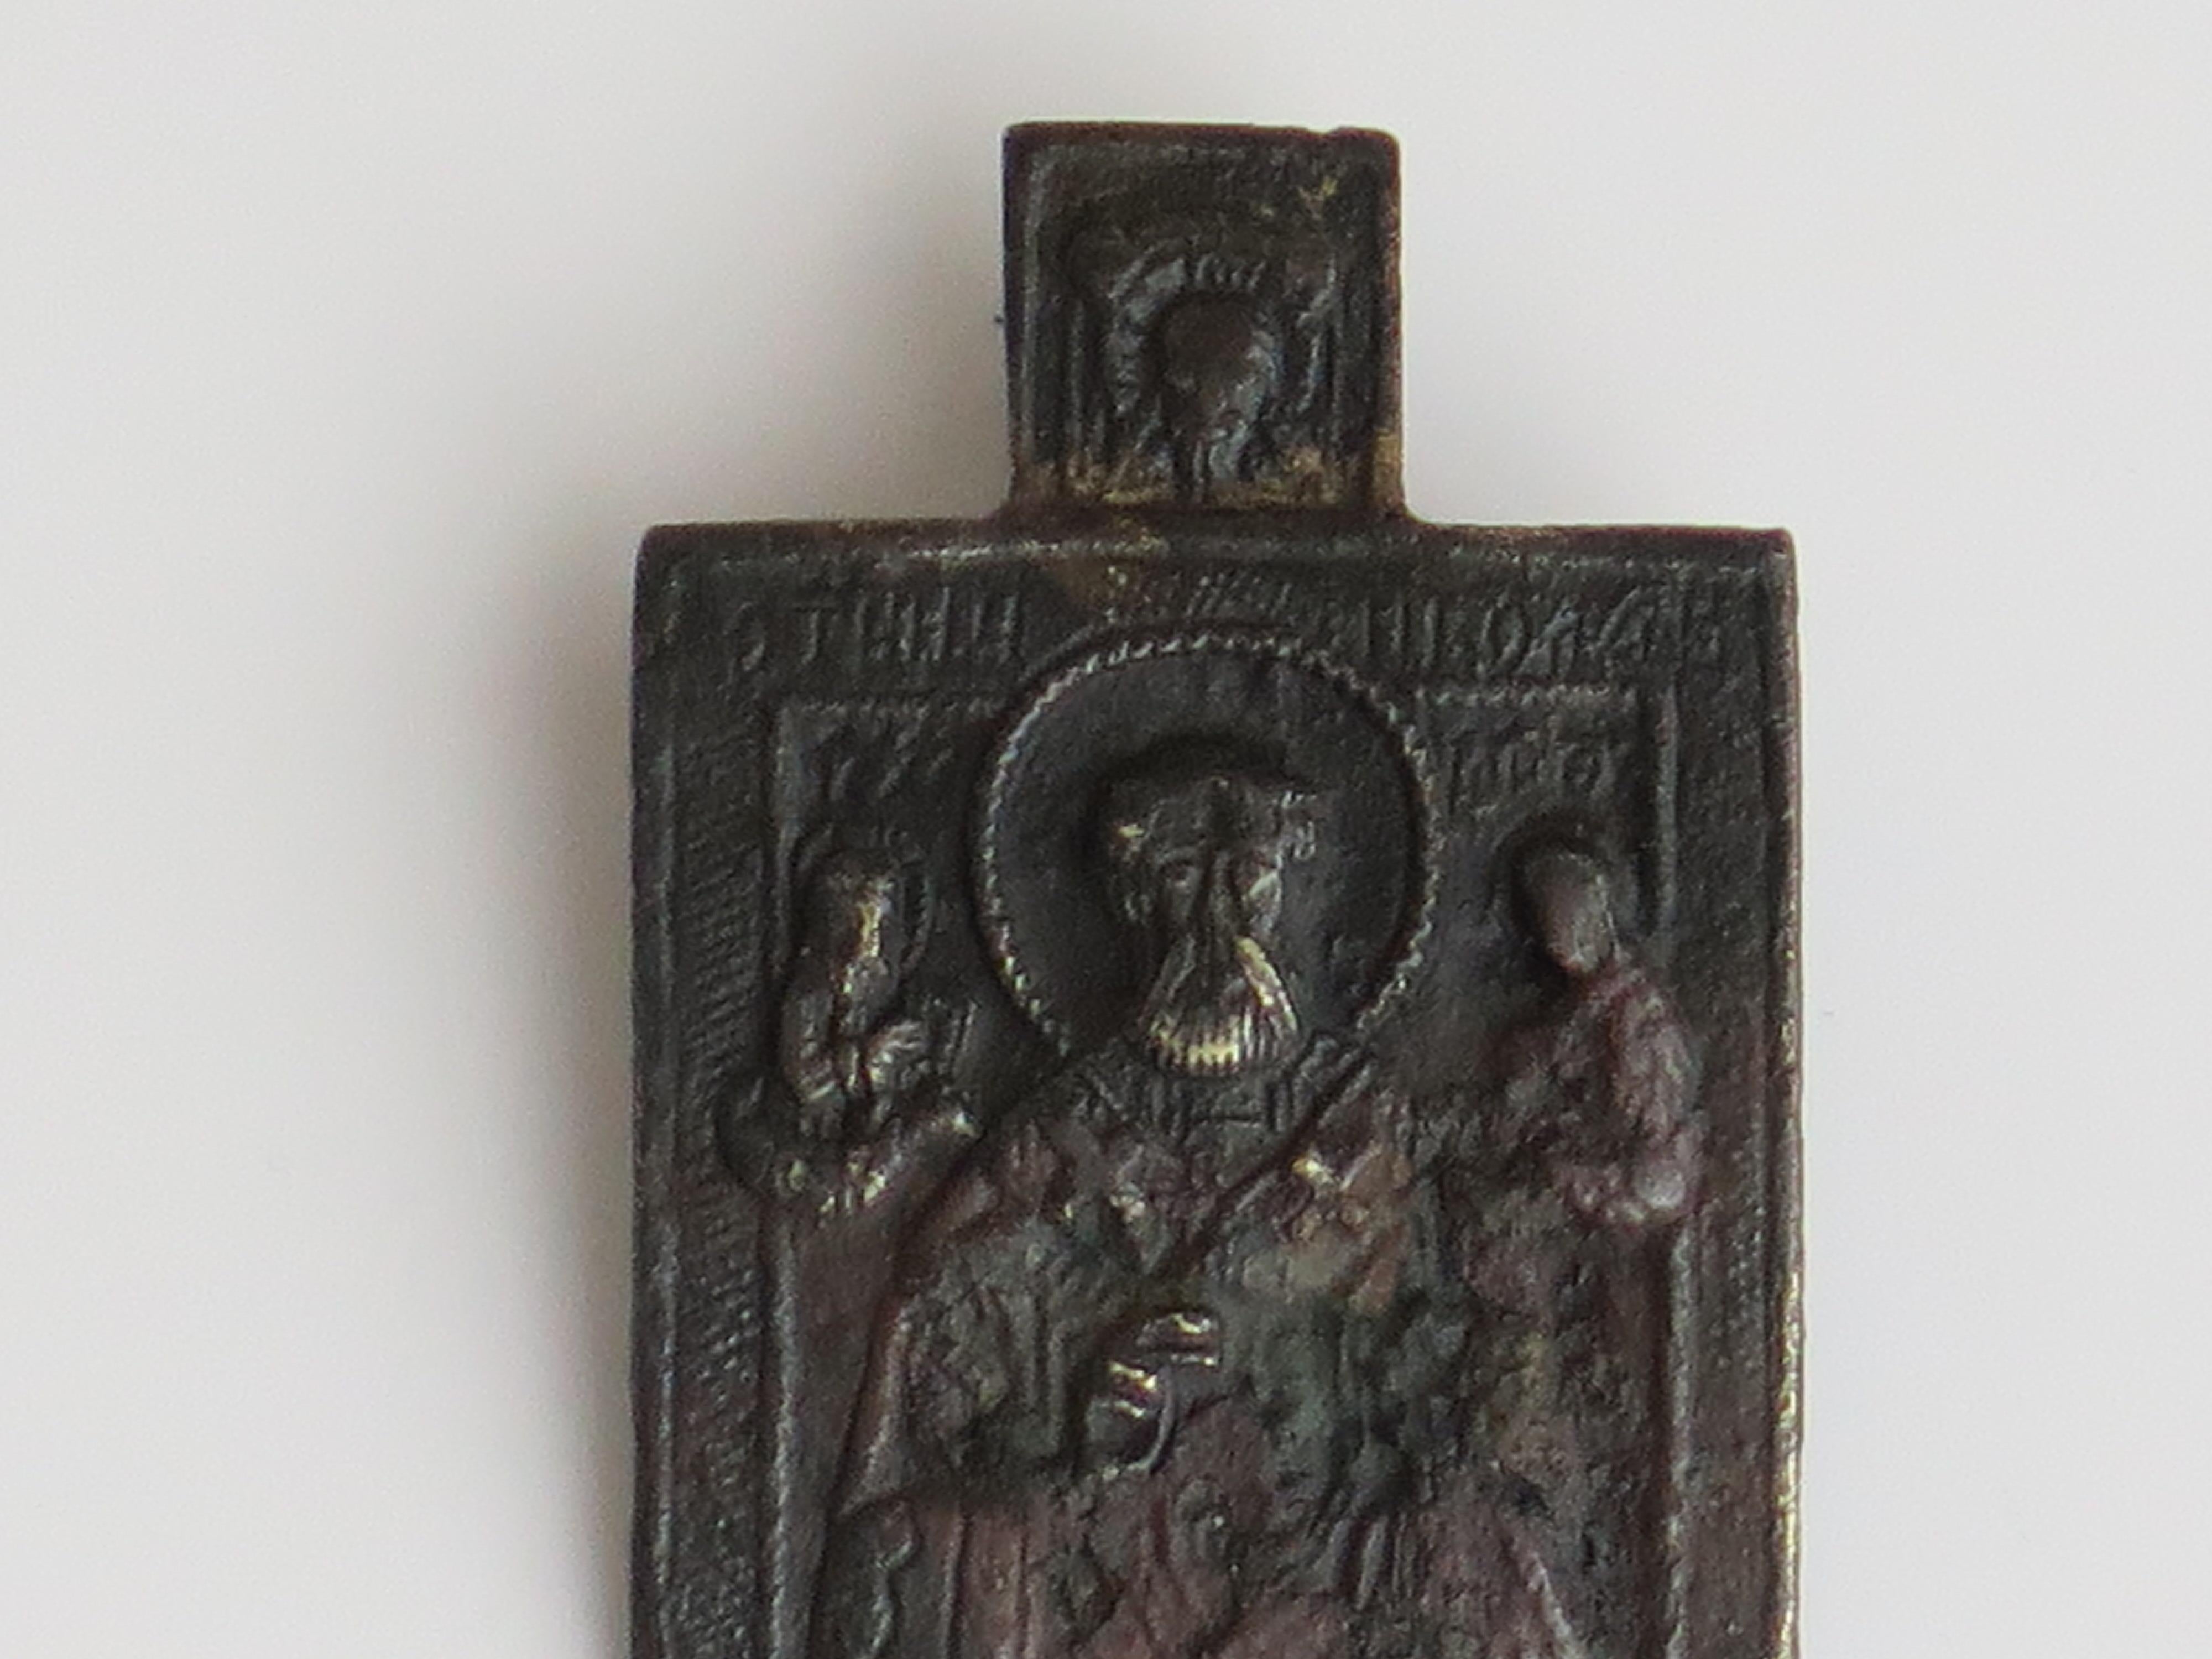 Es handelt sich um eine frühe russisch-orthodoxe Wanderikone aus Bronze, die wir auf das 18. Jahrhundert oder früher datieren. 

Das Bronzesymbol ist in einer rechteckigen, leicht gebogenen Hauptform gegossen, über der sich eine kleinere rechteckige